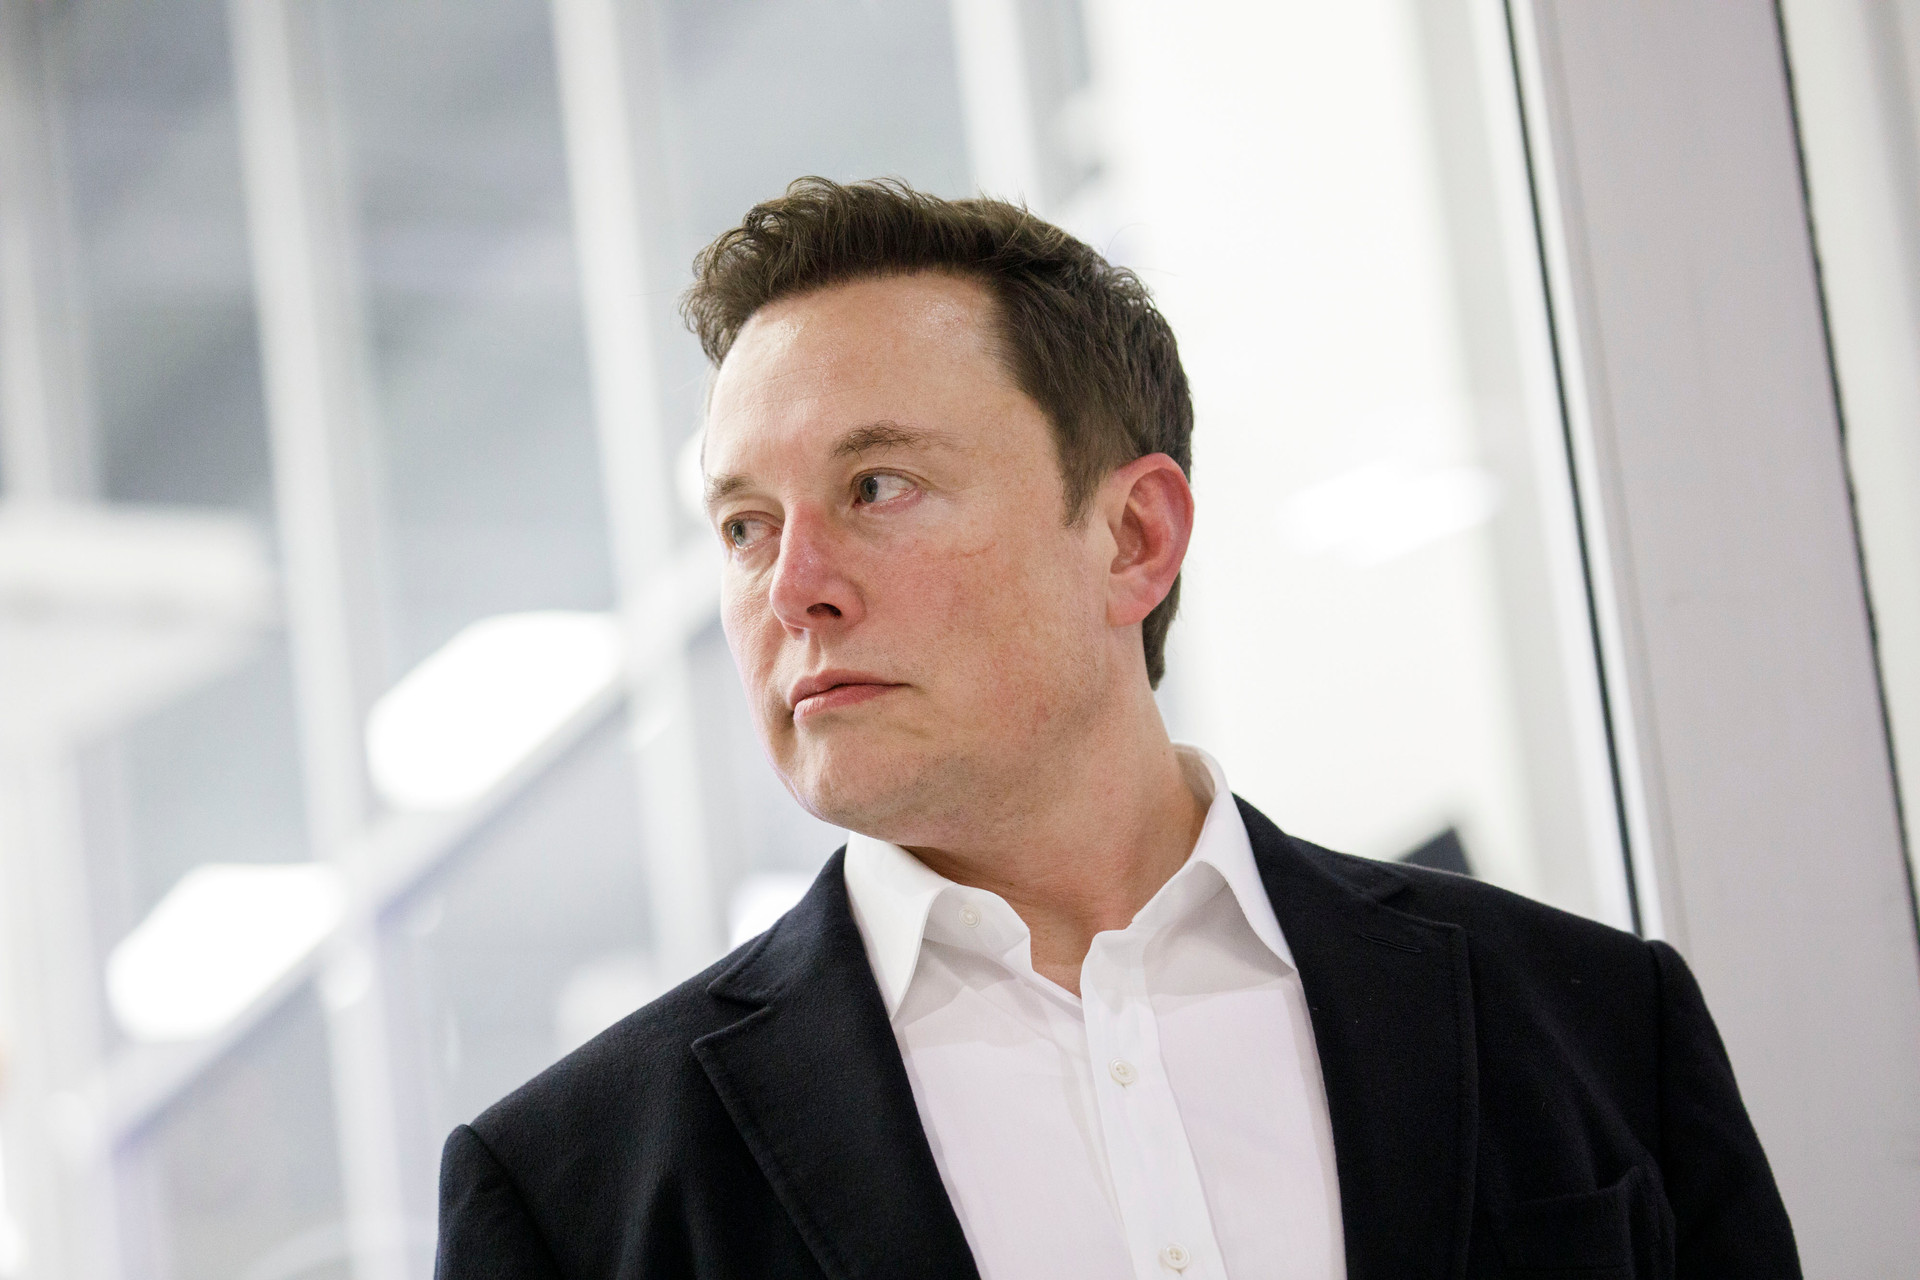 Elon Musk ‘thấm đòn’ chính sách đi làm khắc nghiệt: Mục tiêu 40 giờ/tuần bất khả thi, văn phòng không đủ chỗ ngồi, thiết bị - Ảnh 4.